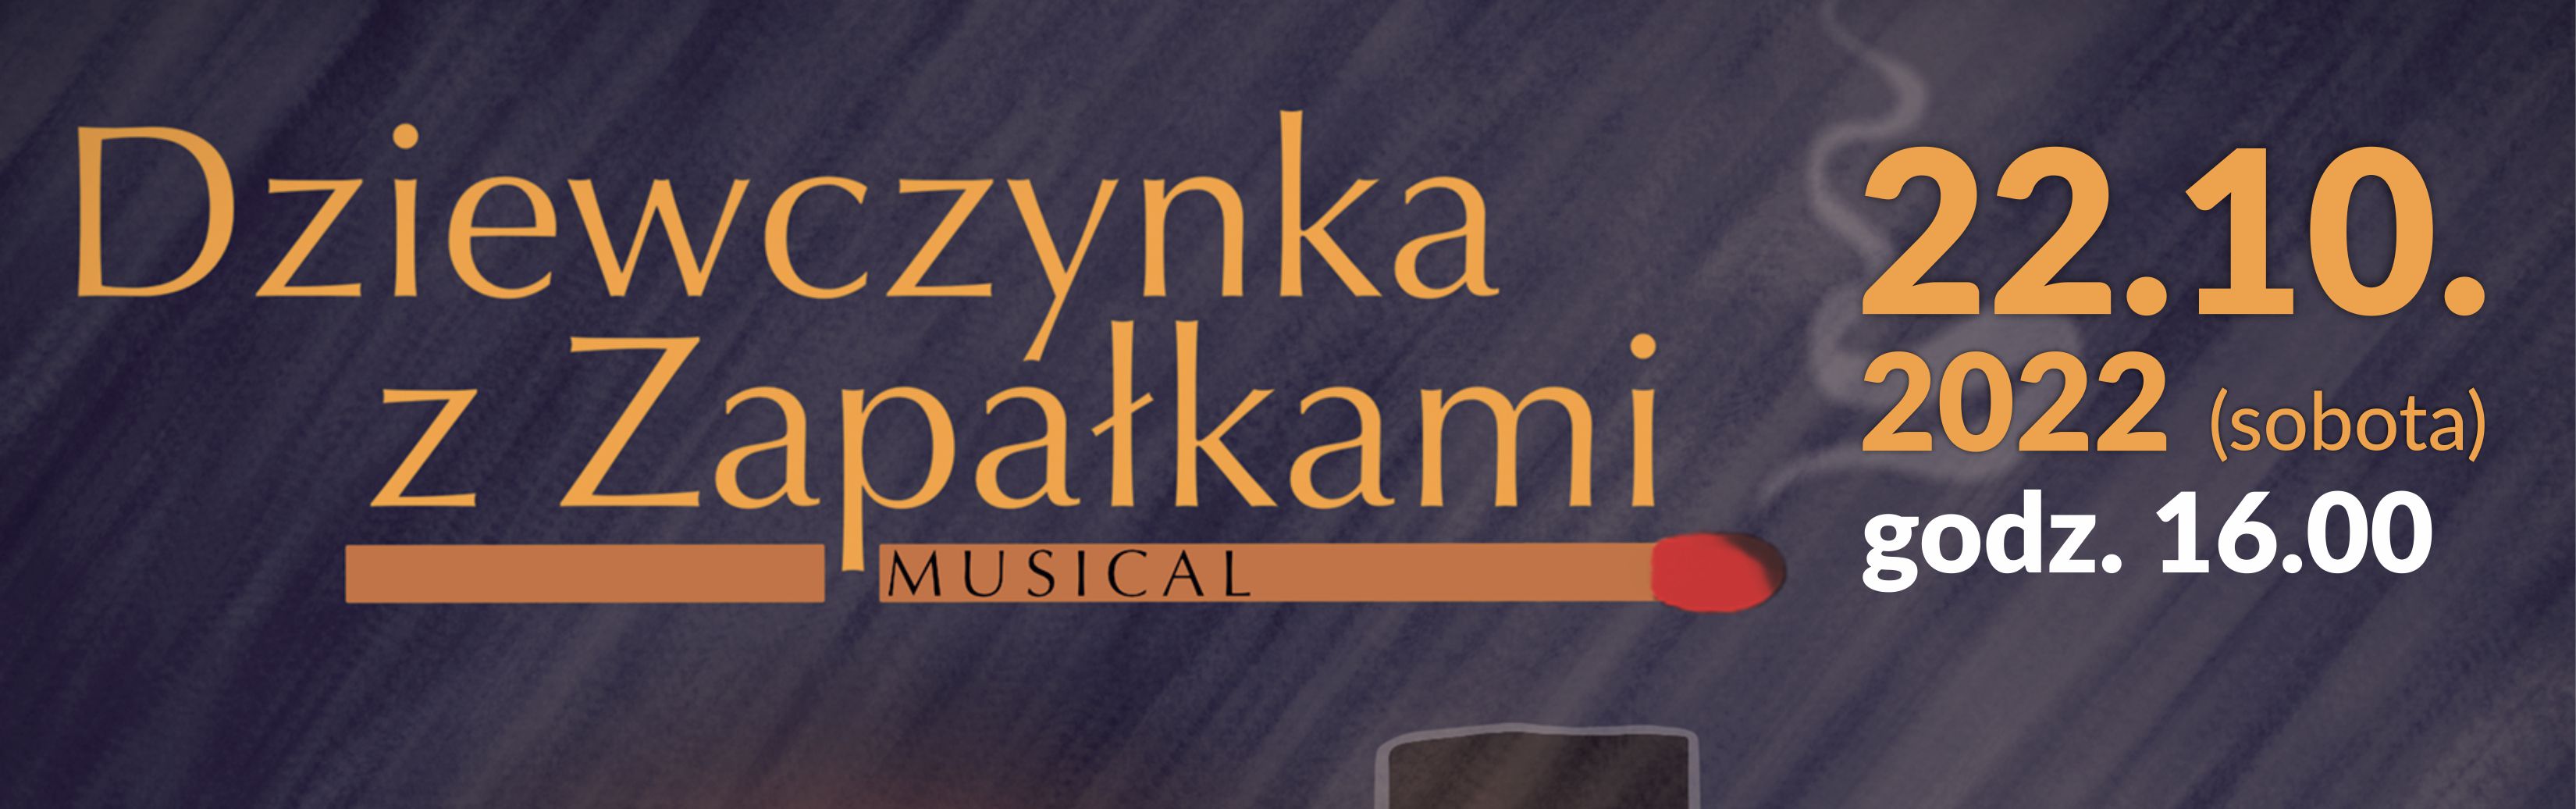 baner promujący spektakl muzyczny z datą 22.10.2022